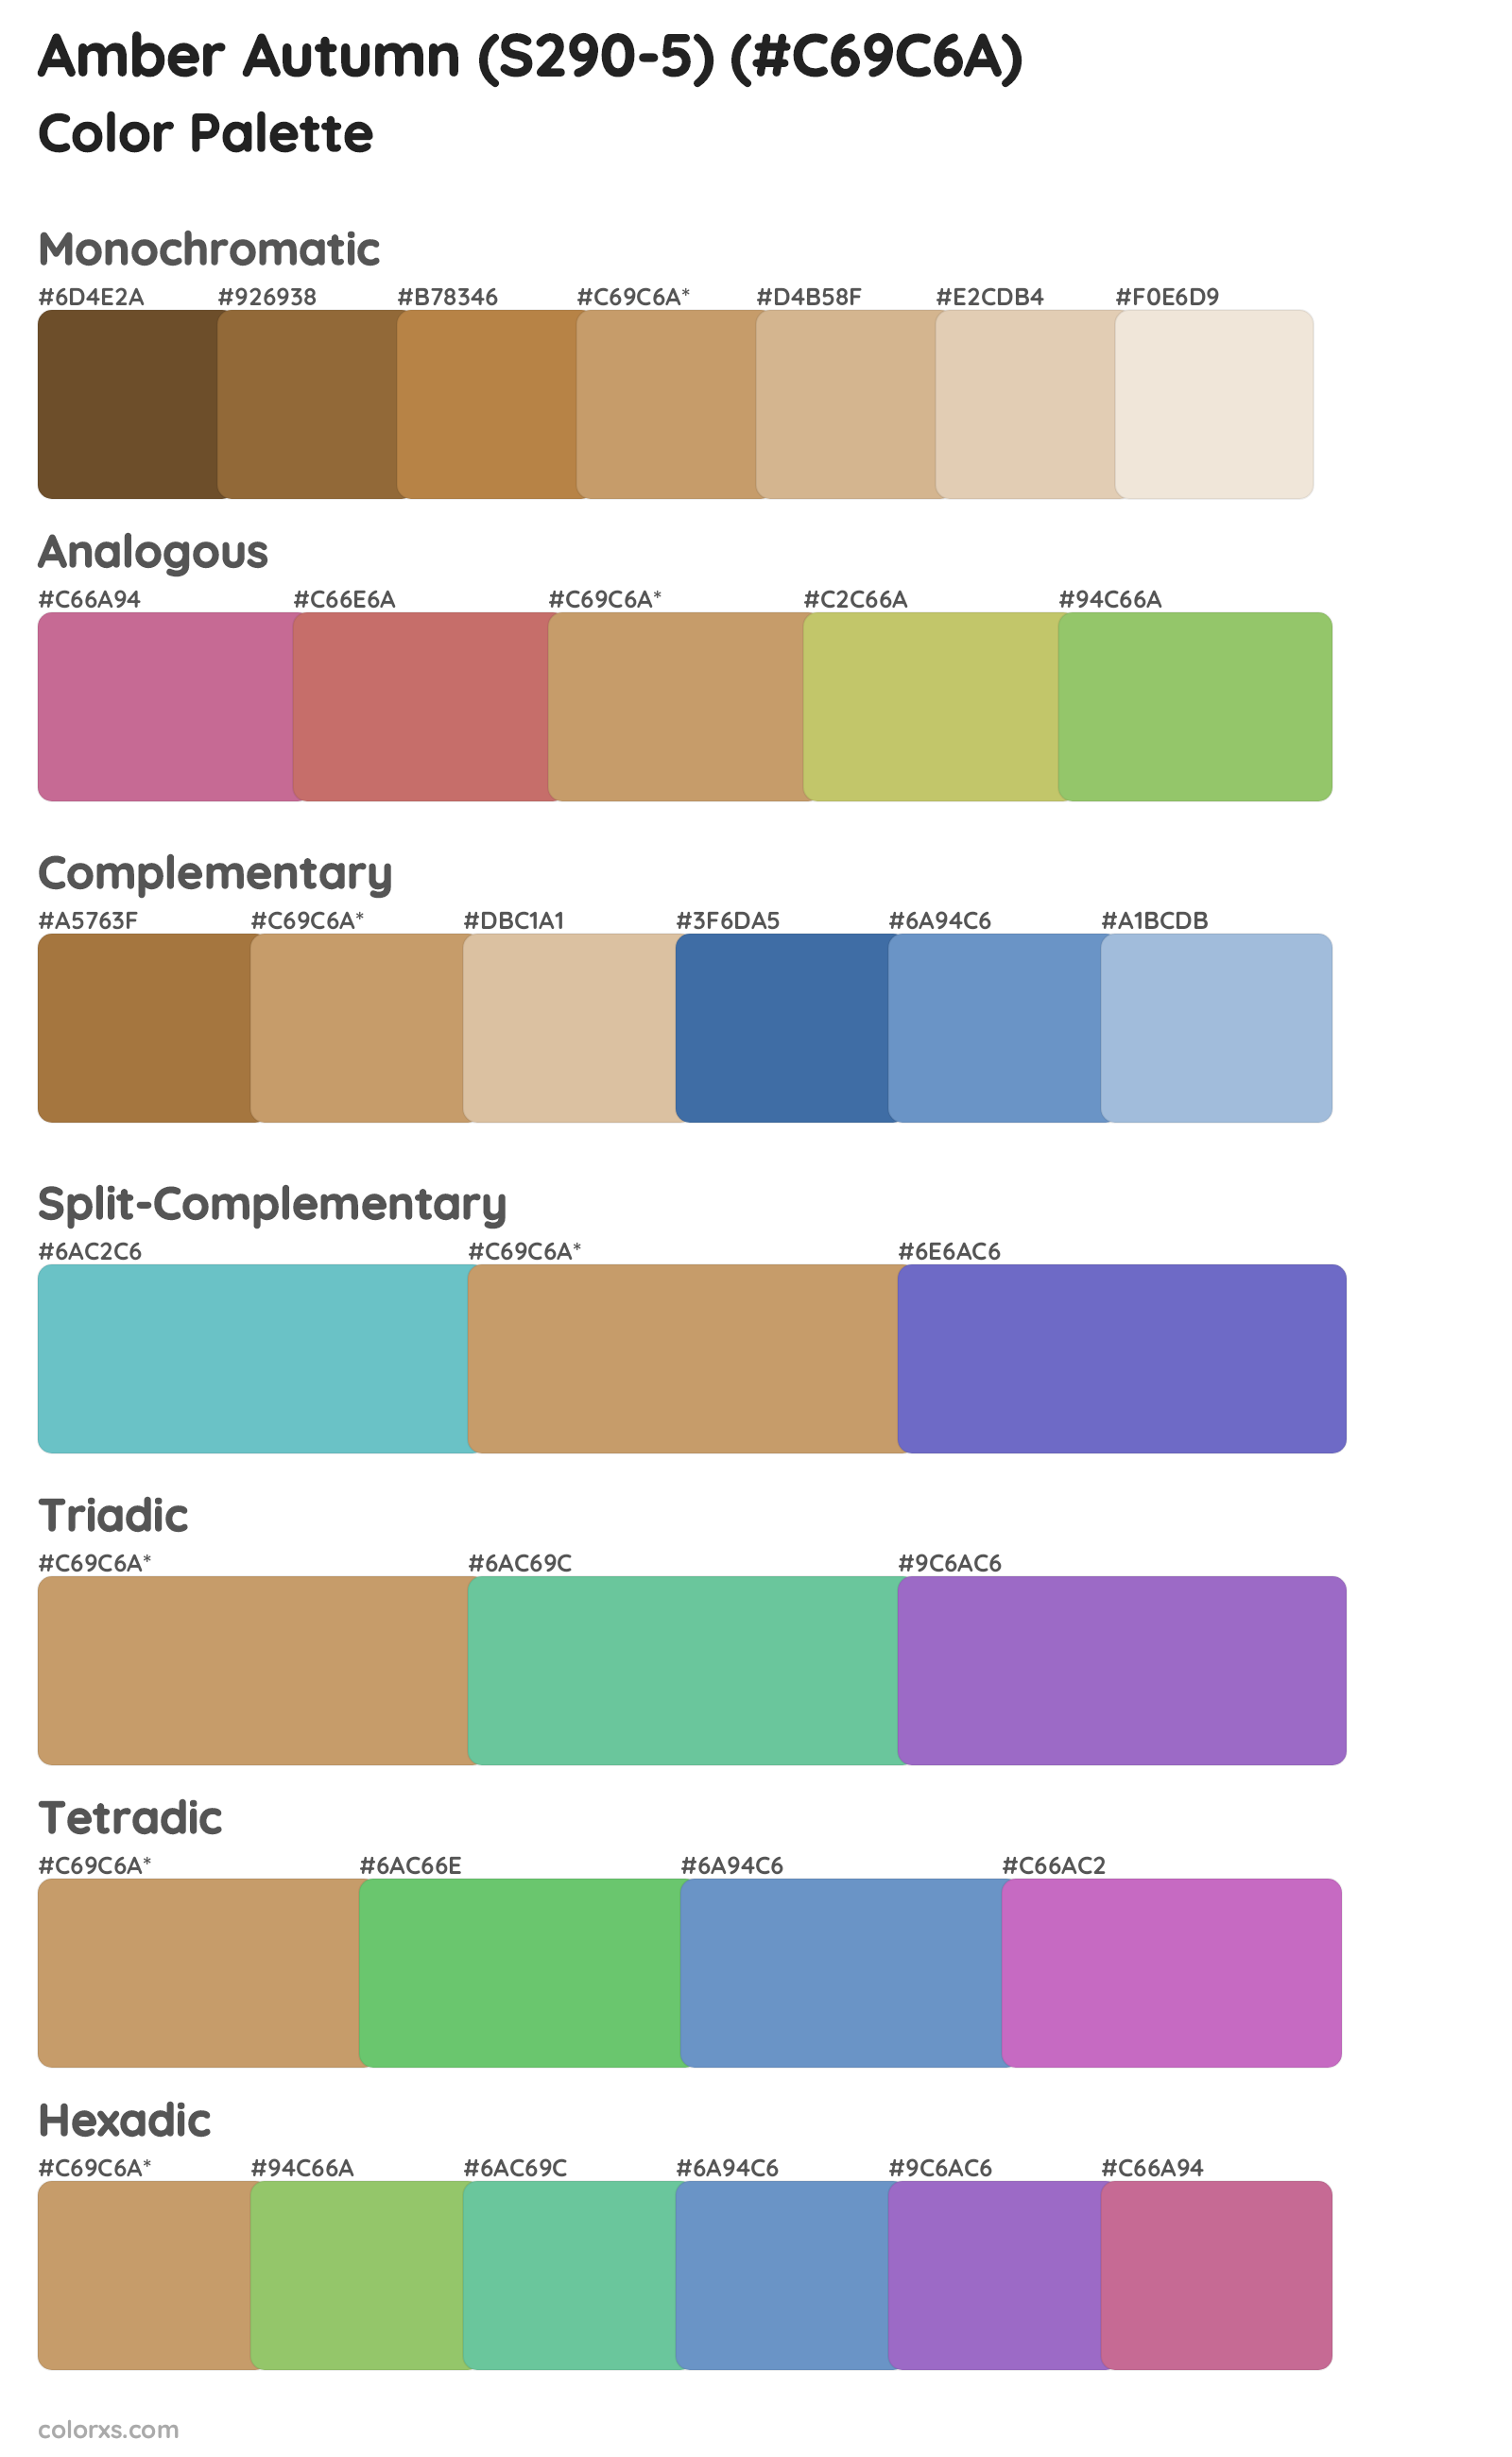 Amber Autumn (S290-5) Color Scheme Palettes